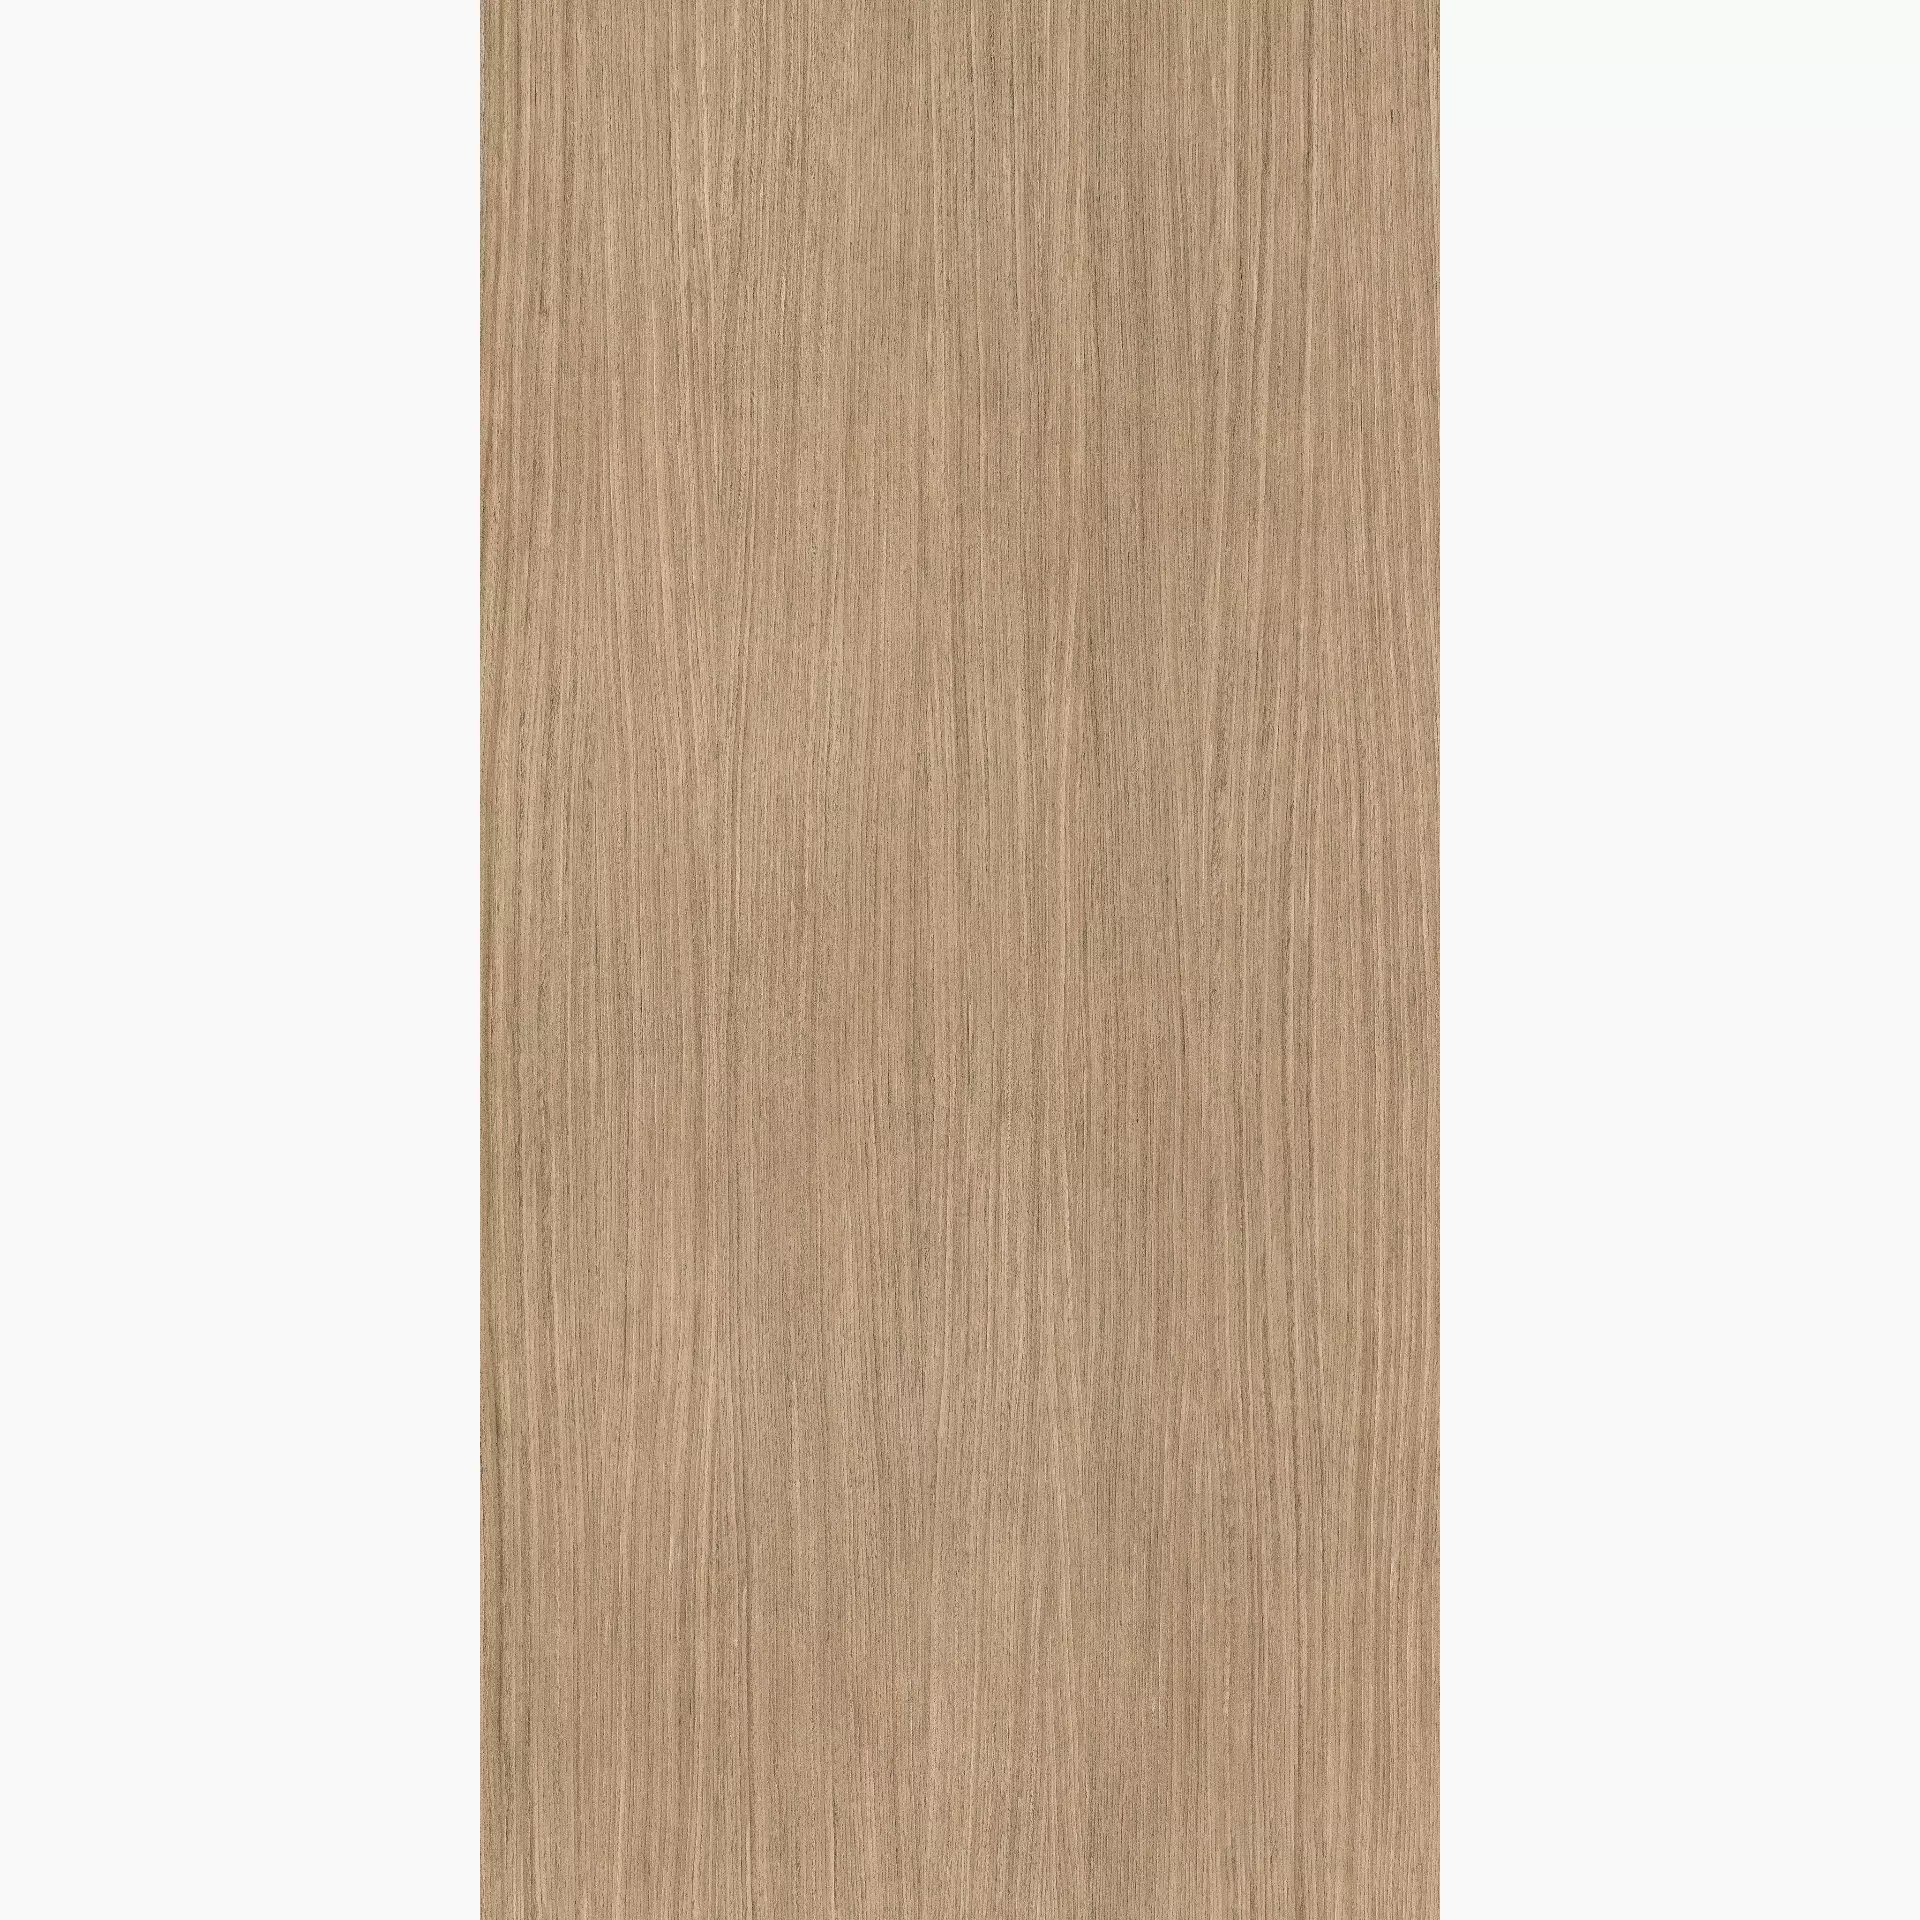 Florim Nature Mood Plank 01 Comfort Plank 01 774864 matt rutschhemmend 120x240cm rektifiziert 6mm